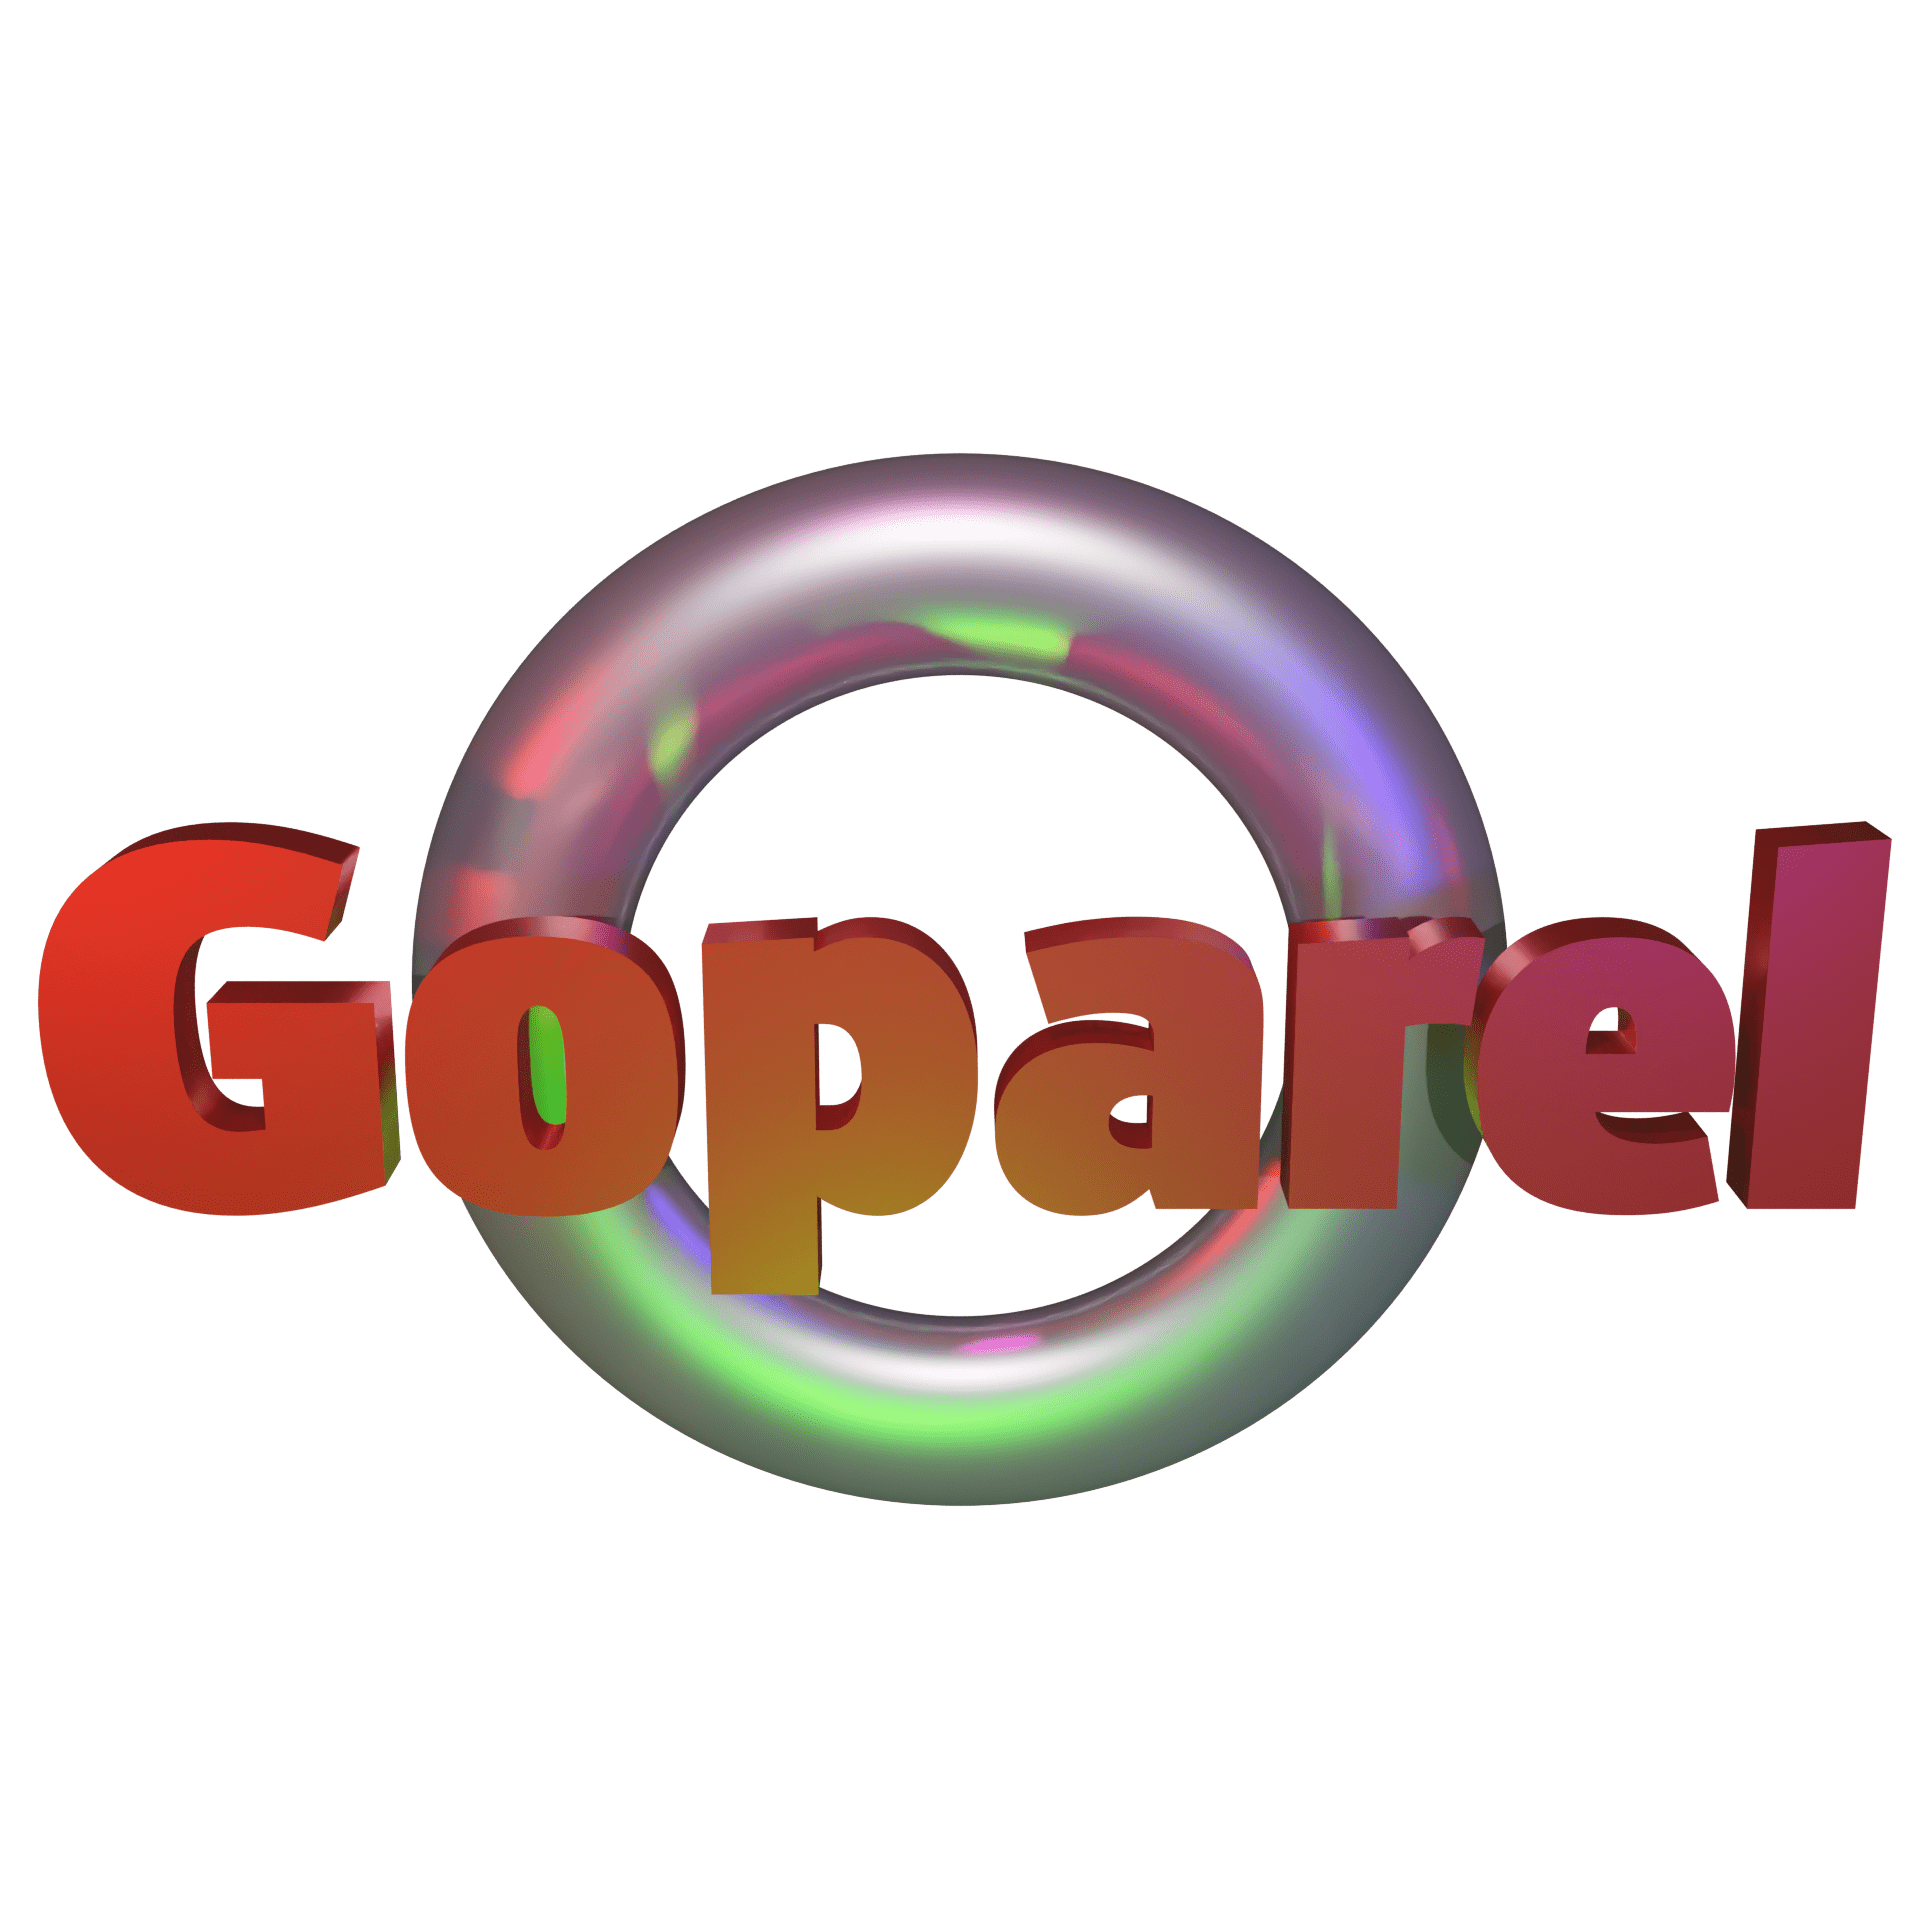 Goparel Space